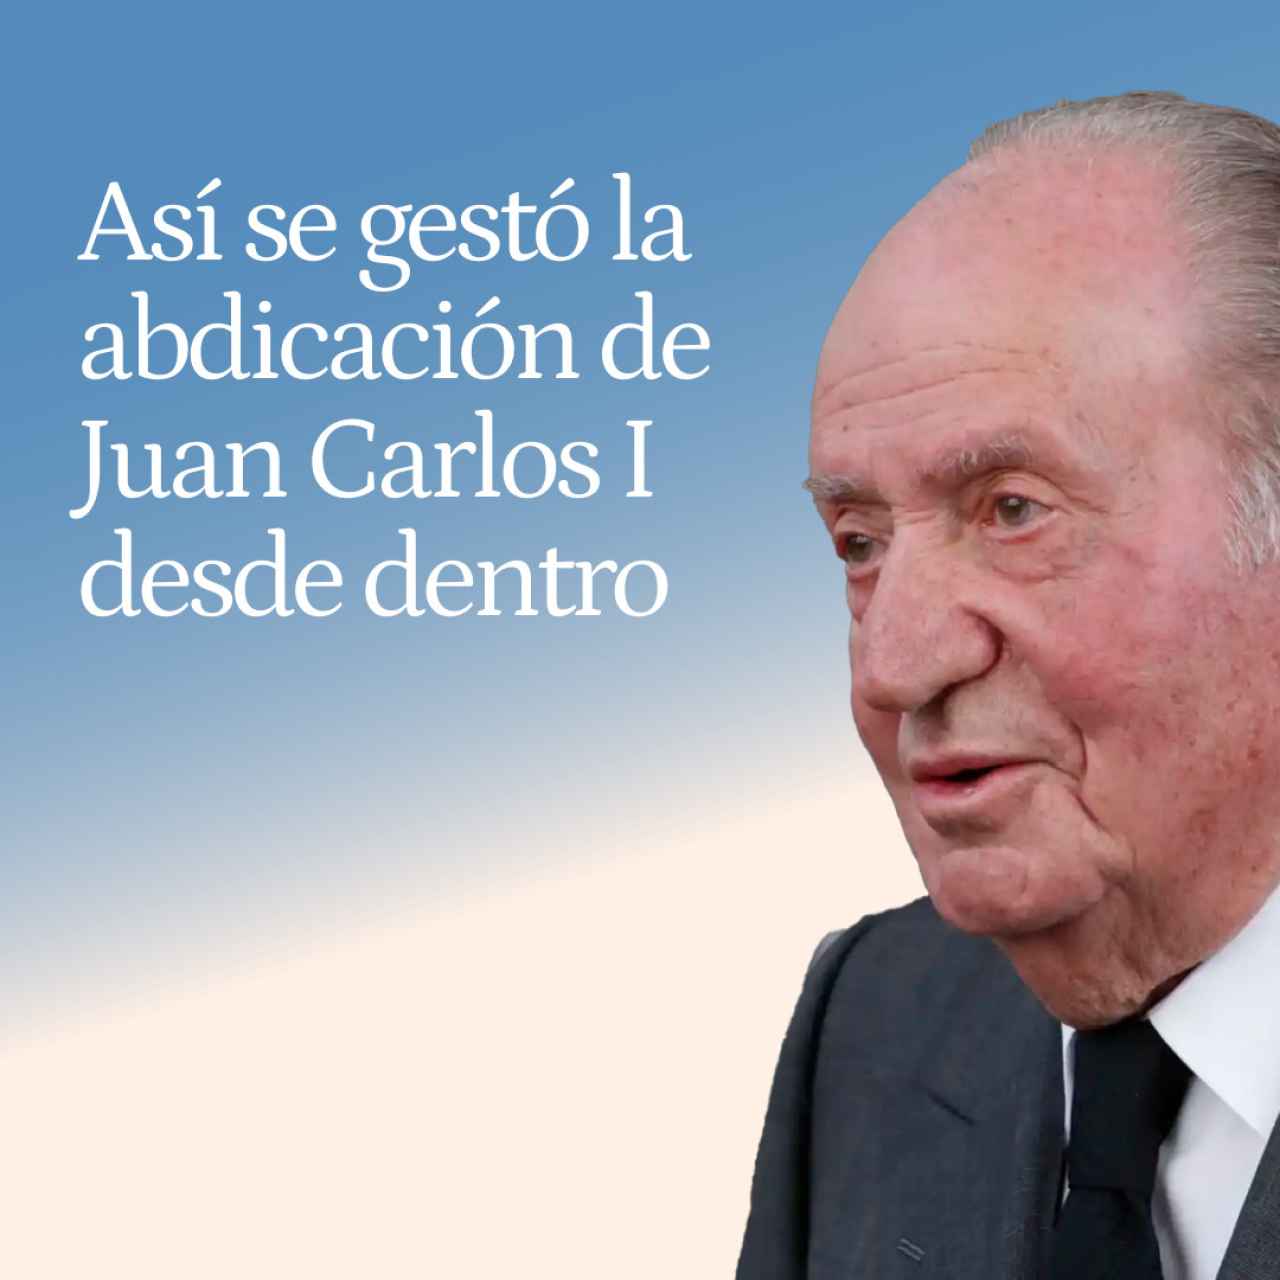 La abdicación, por dentro: Rubalcaba sujetó al PSOE y Zarzuela tuteló a un Juan Carlos I desatado